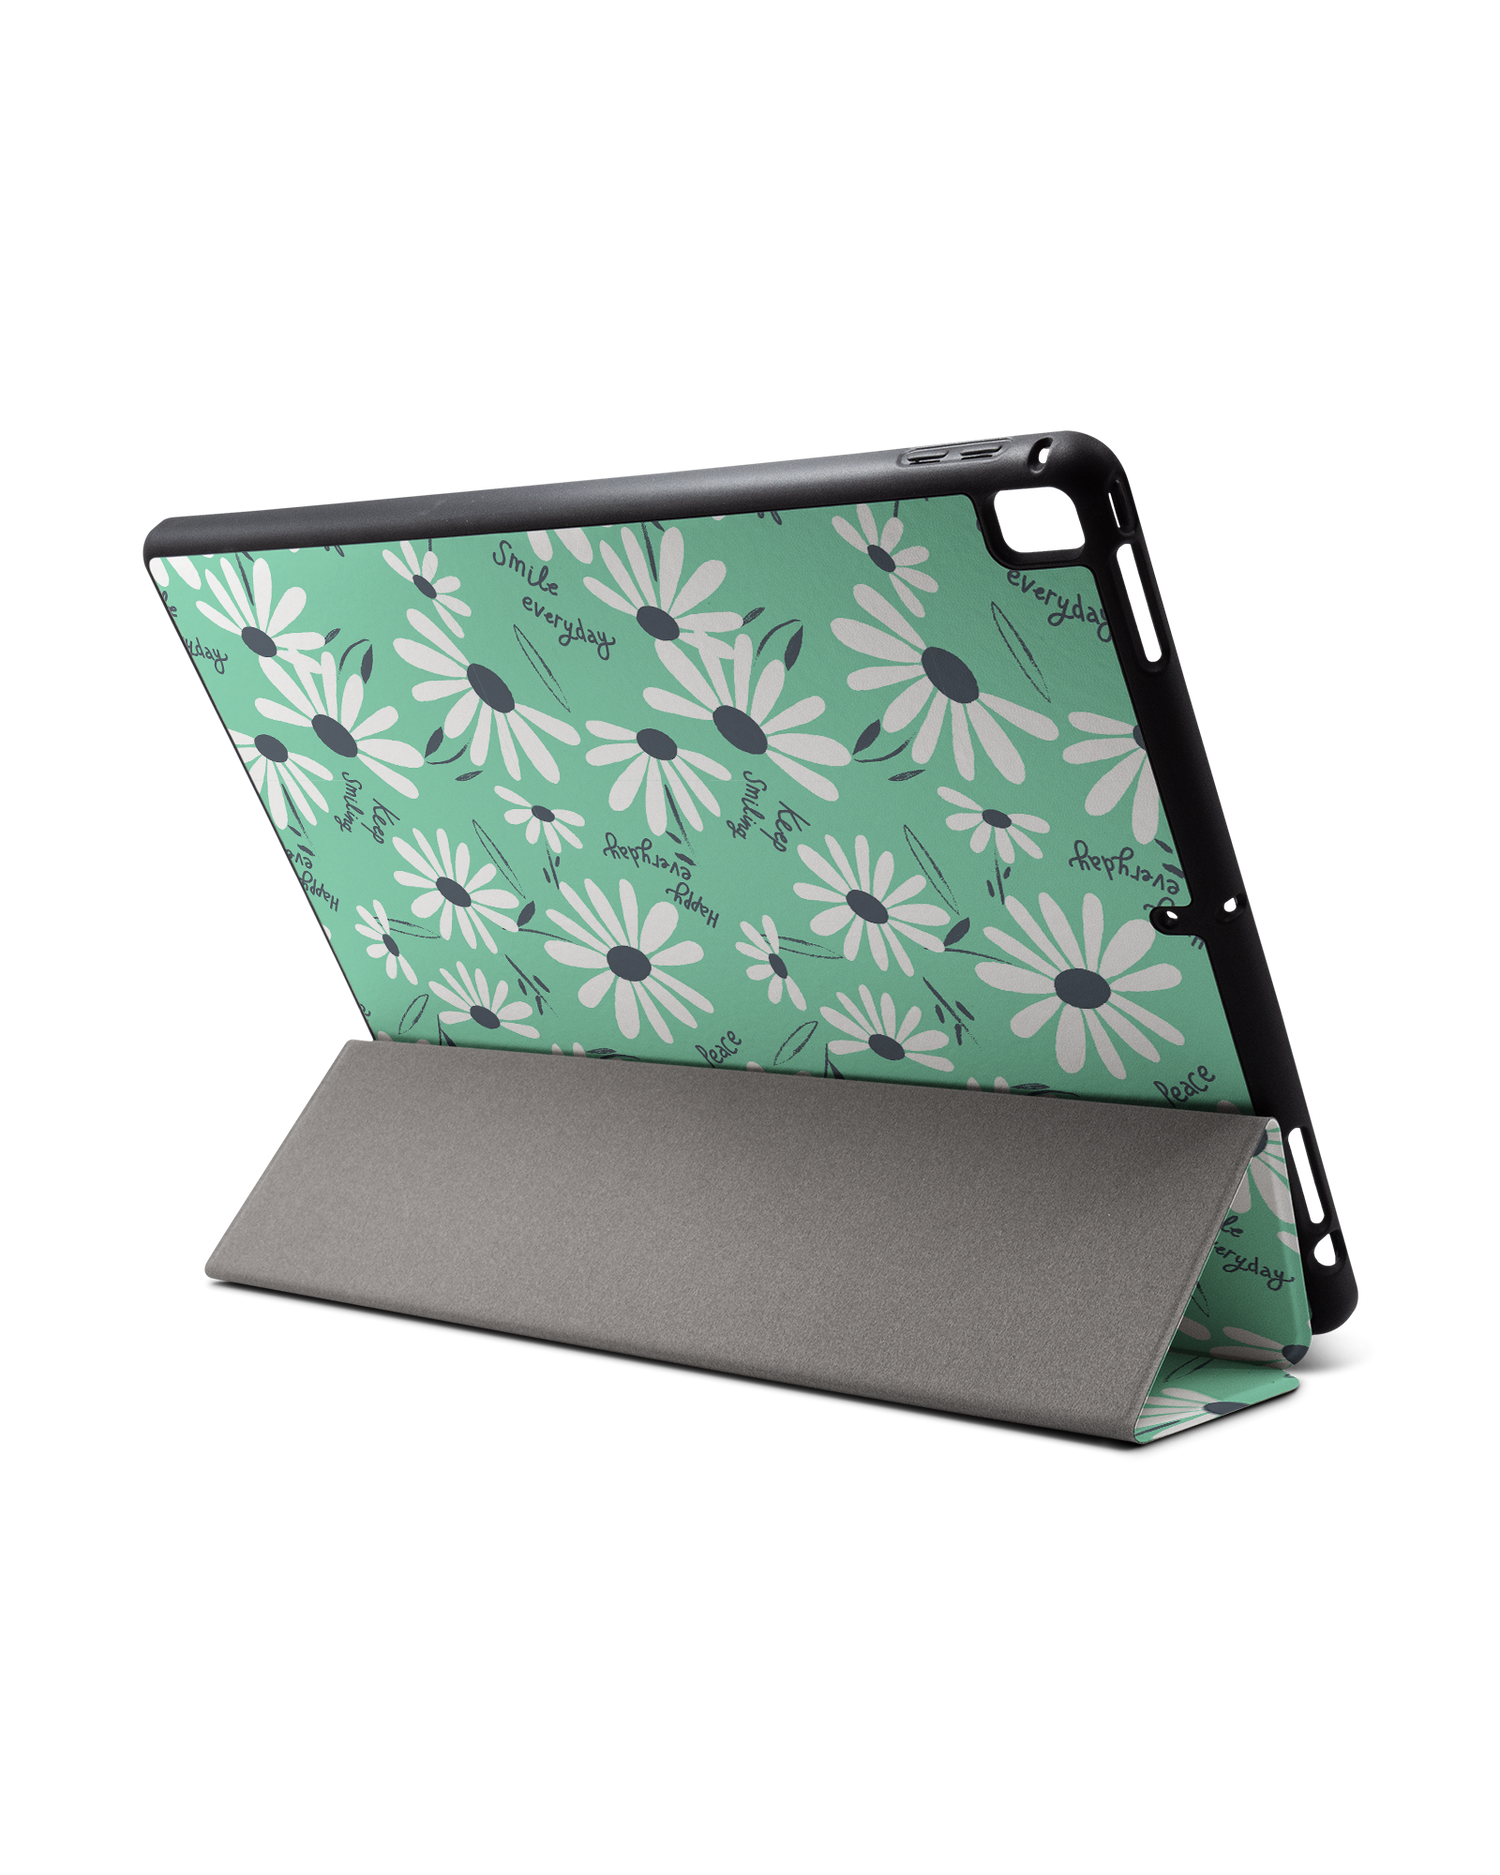 Positive Daisies iPad Hülle mit Stifthalter für Apple iPad Pro 2 12.9'' (2017): Aufgestellt im Querformat von hinten